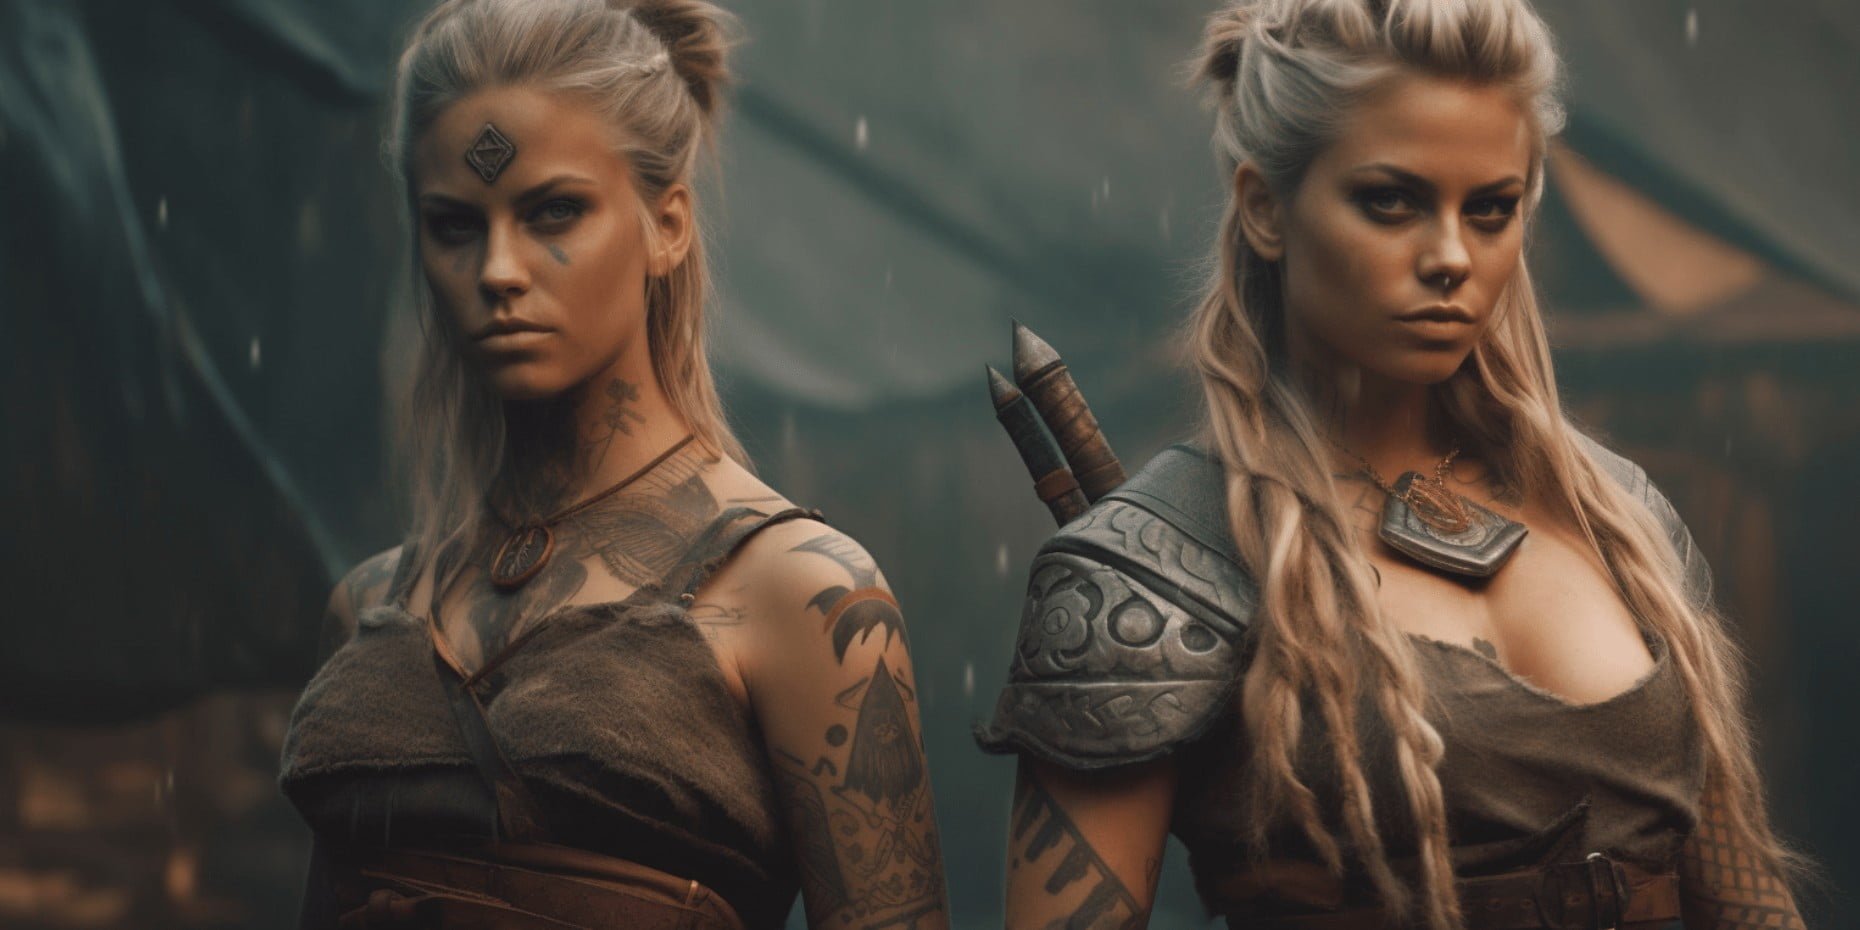 Viking woman tattoo - bestink.pics